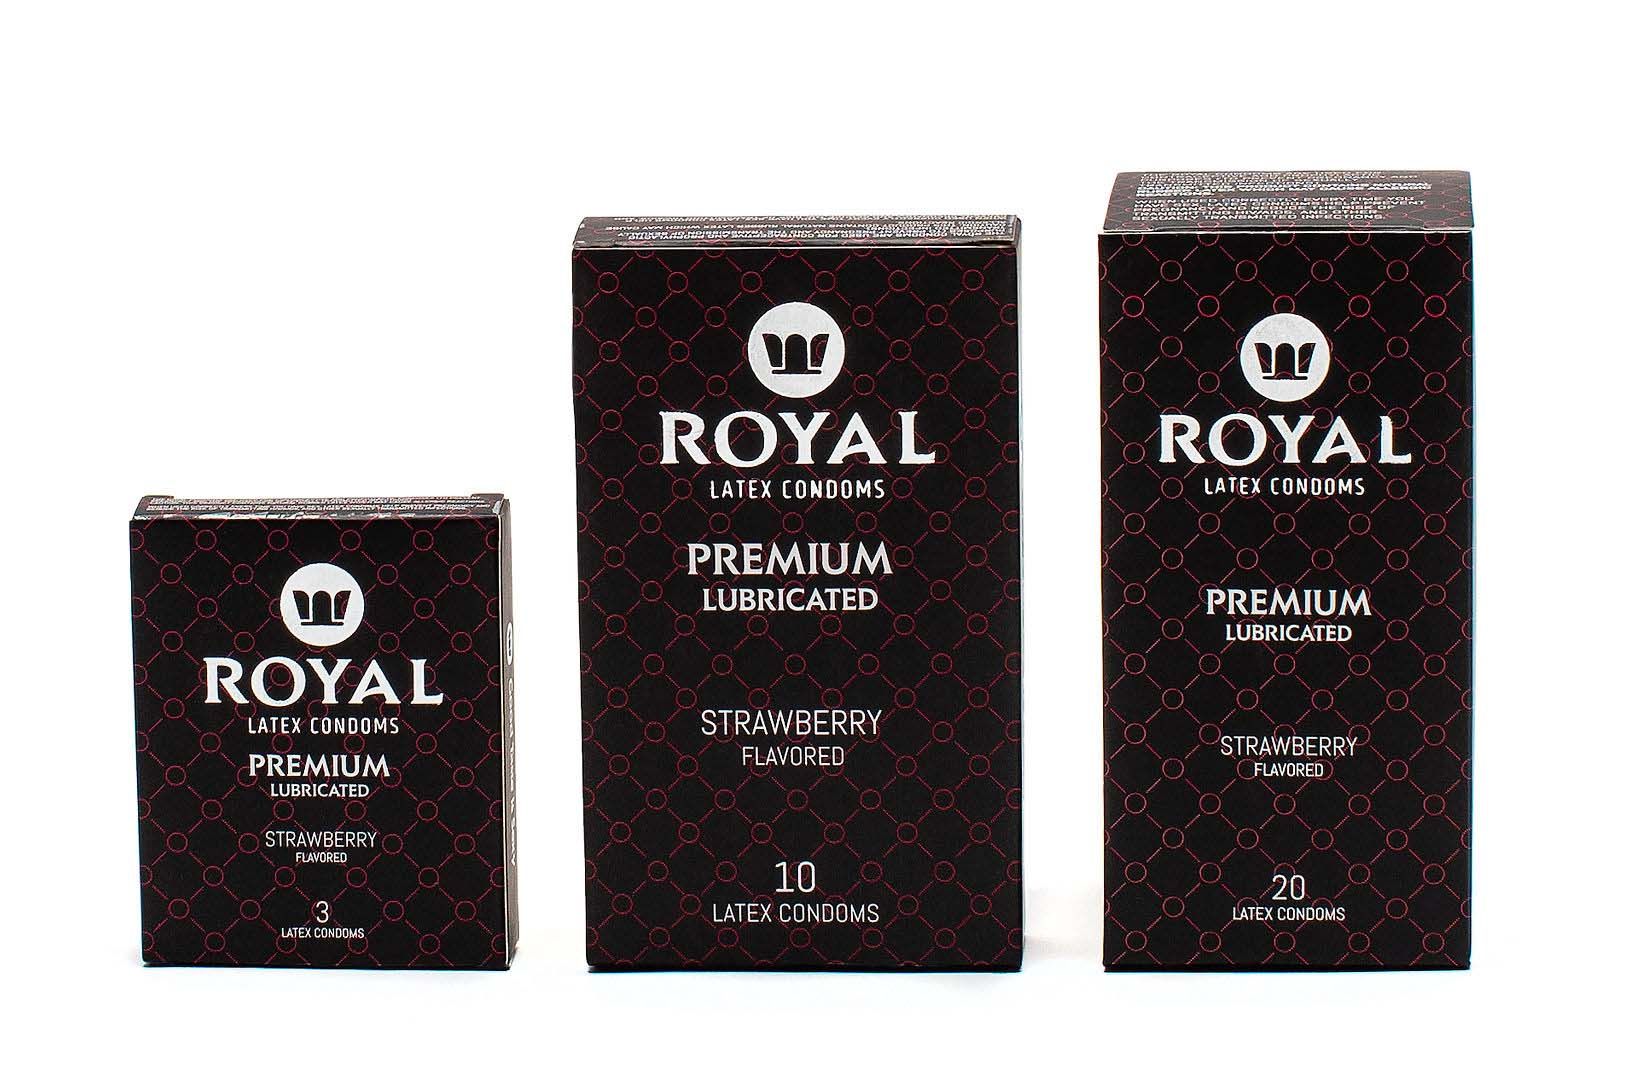 Royal Latex Condoms